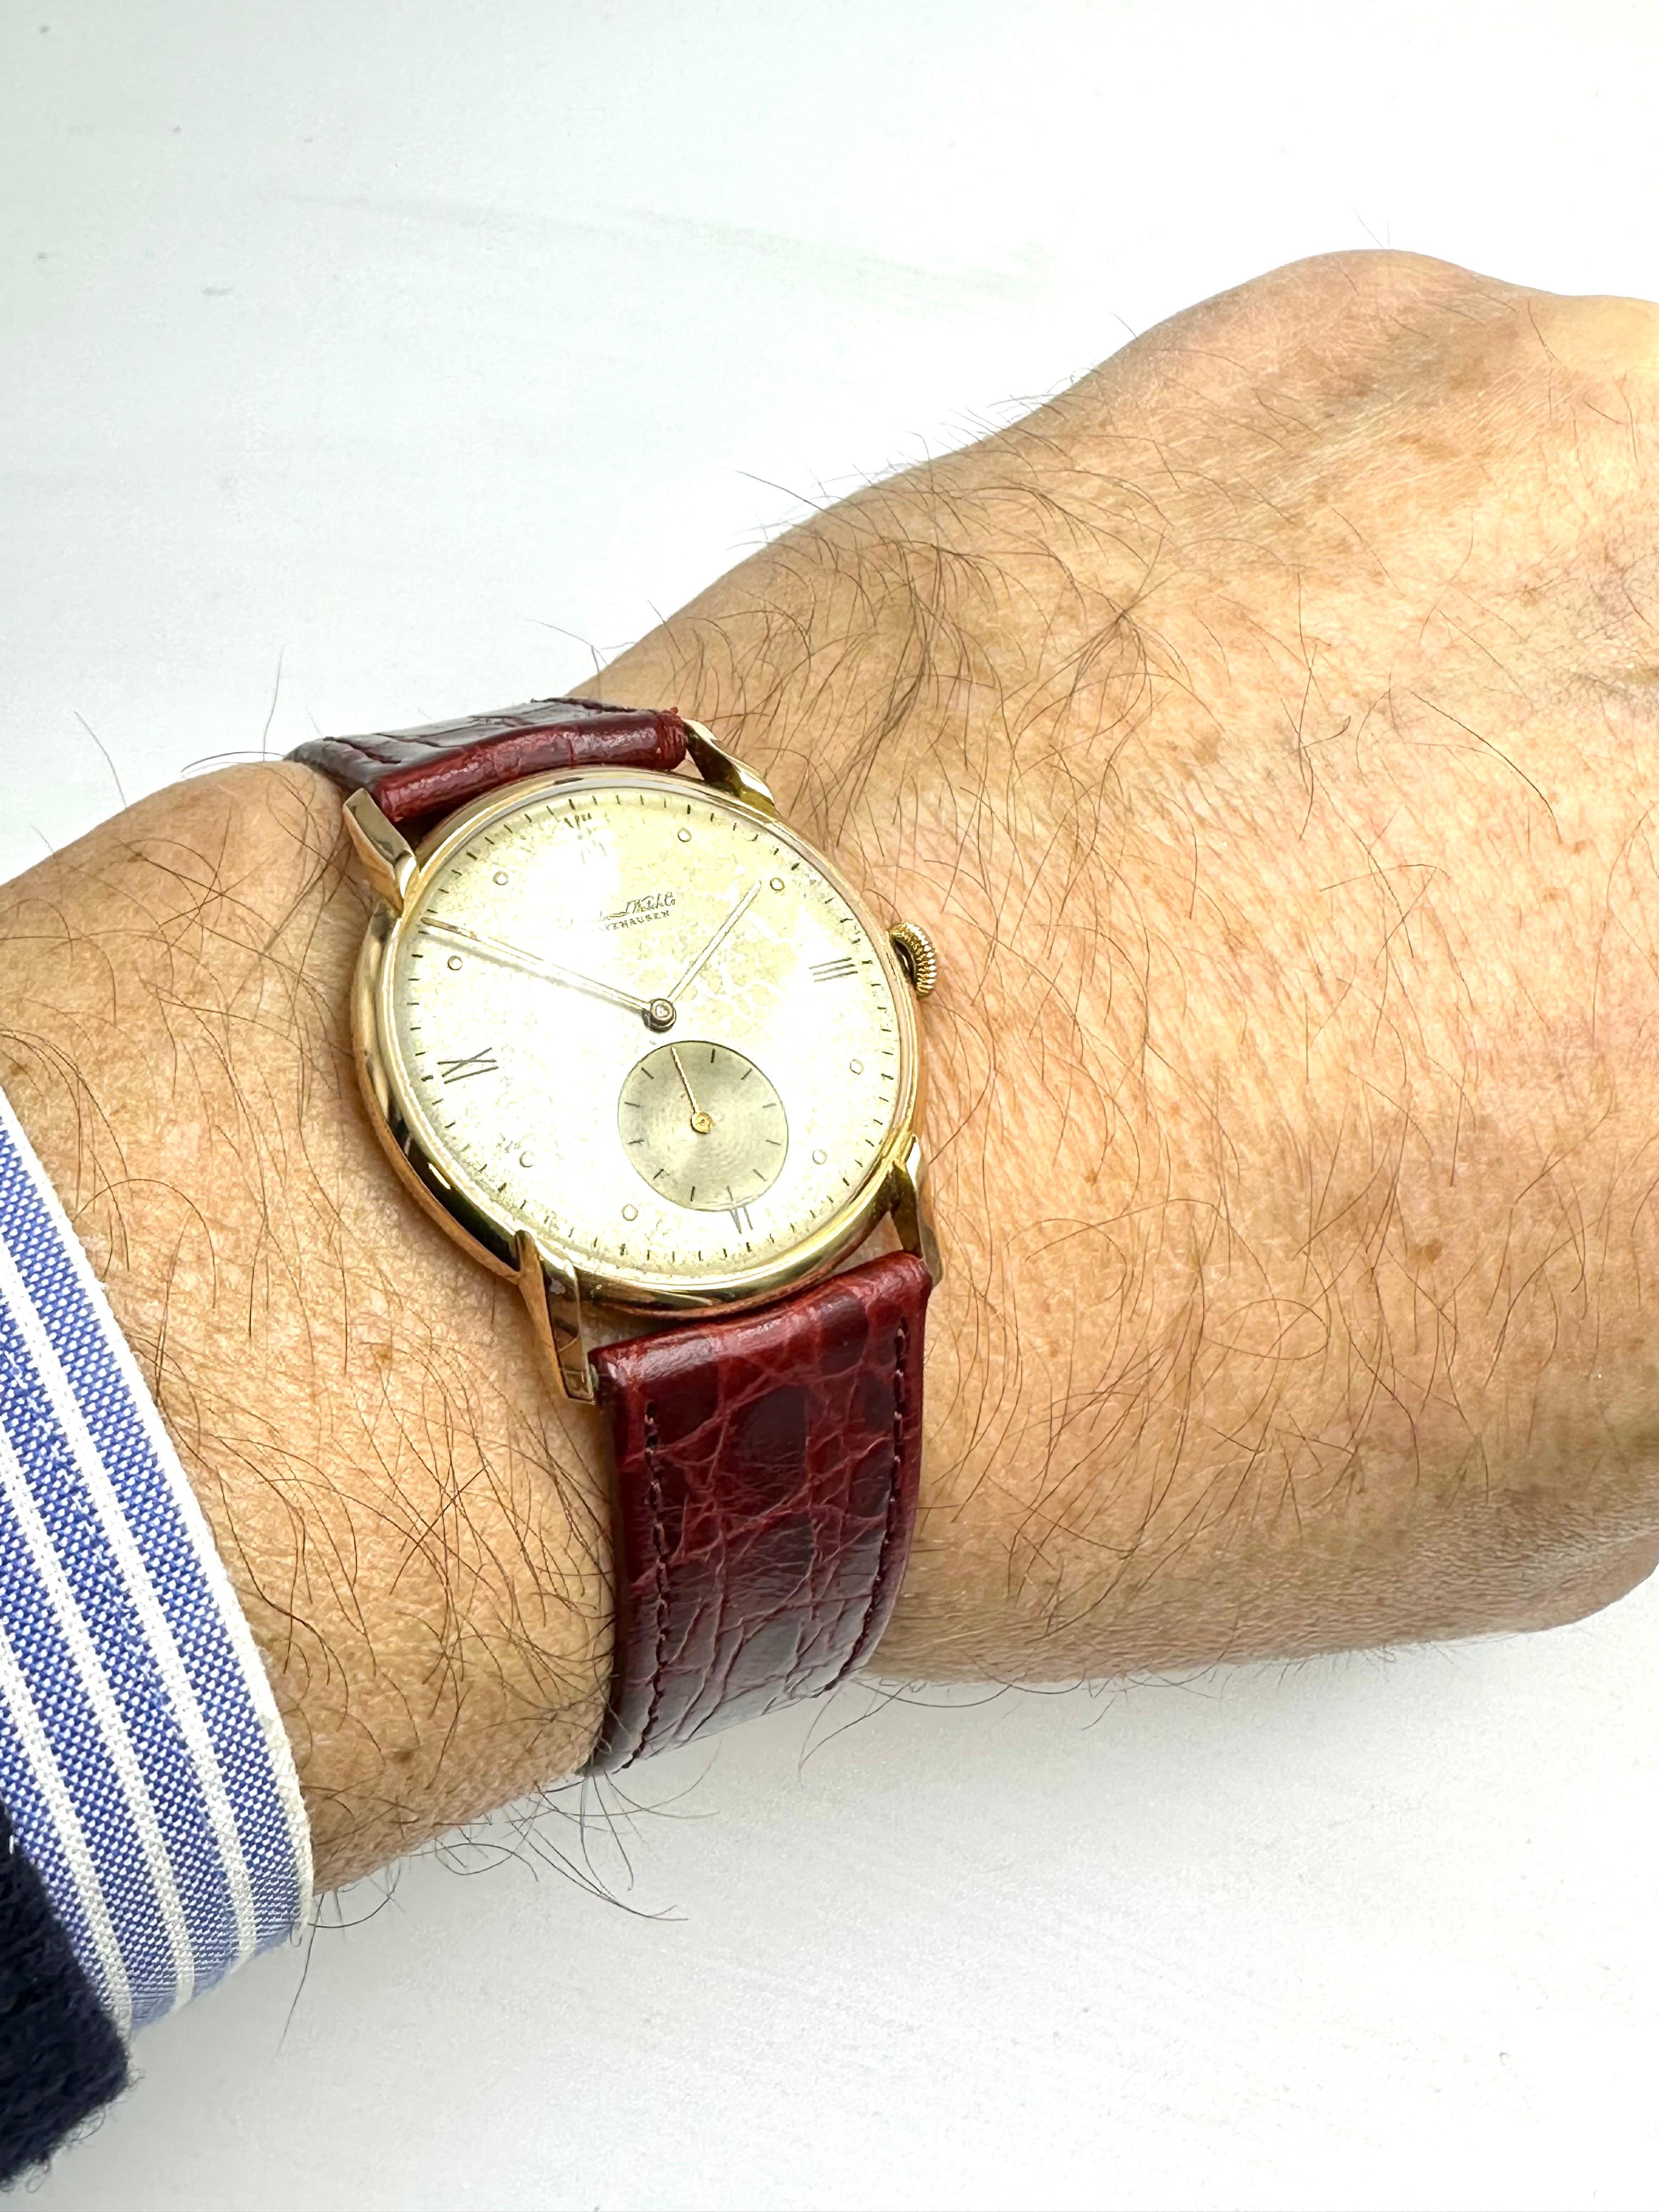 Versetzen Sie sich mit dieser IWC Schaffausen Uhr aus den 1940er Jahren in die Vergangenheit. 
Sie besitzt ein rundes 18-karätiges Goldgehäuse mit einzigartig geformten Bandanstößen, ein silbernes Zifferblatt in ausgezeichnetem Zustand und ein